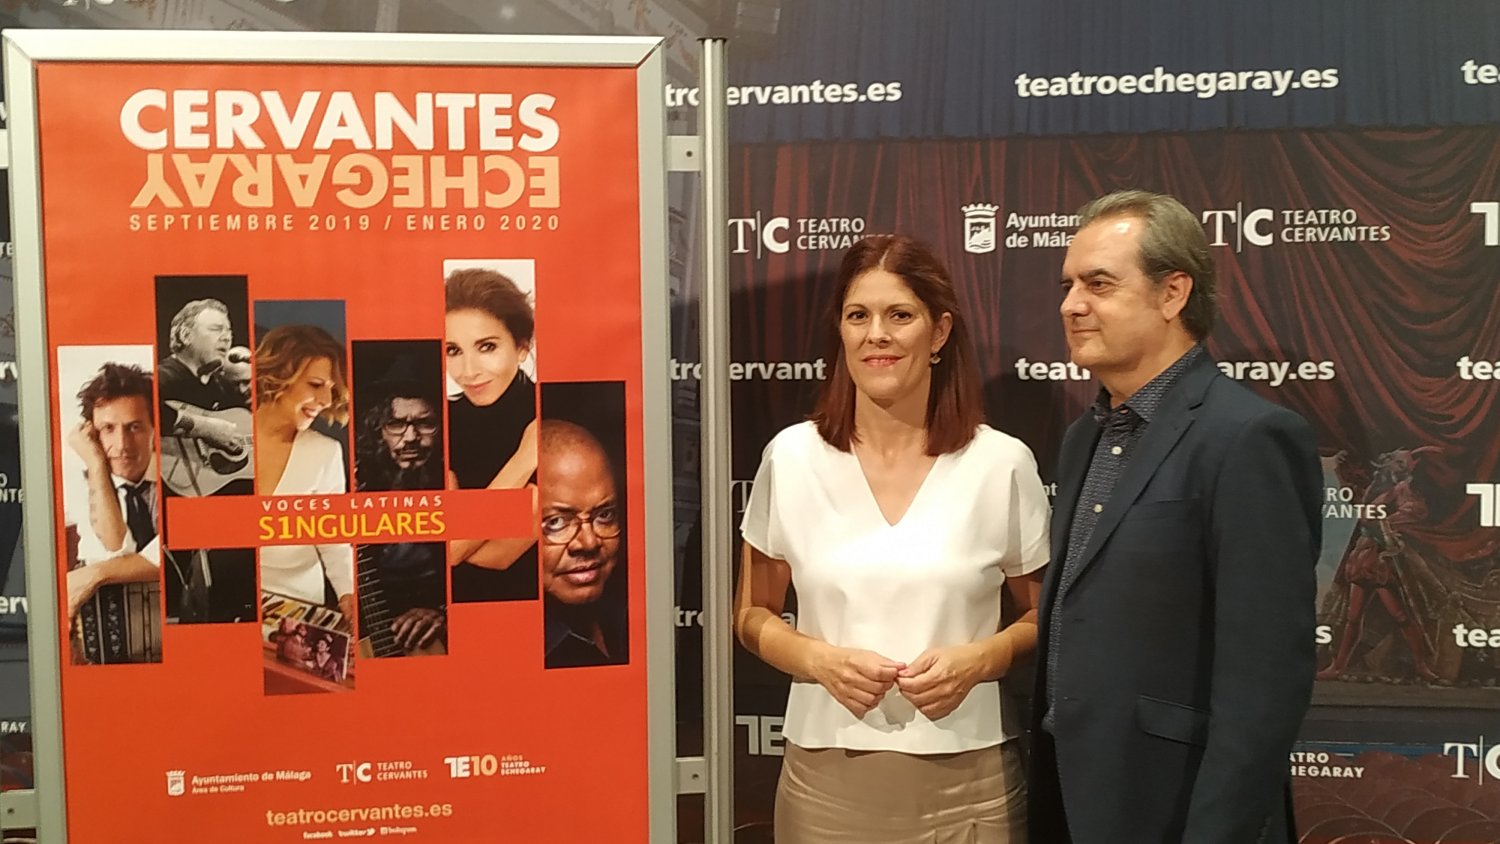 El Teatro Cervantes inaugurará su temporada 2019-2020 a partir de septiembre con actuaciones en torno a la música y la danza